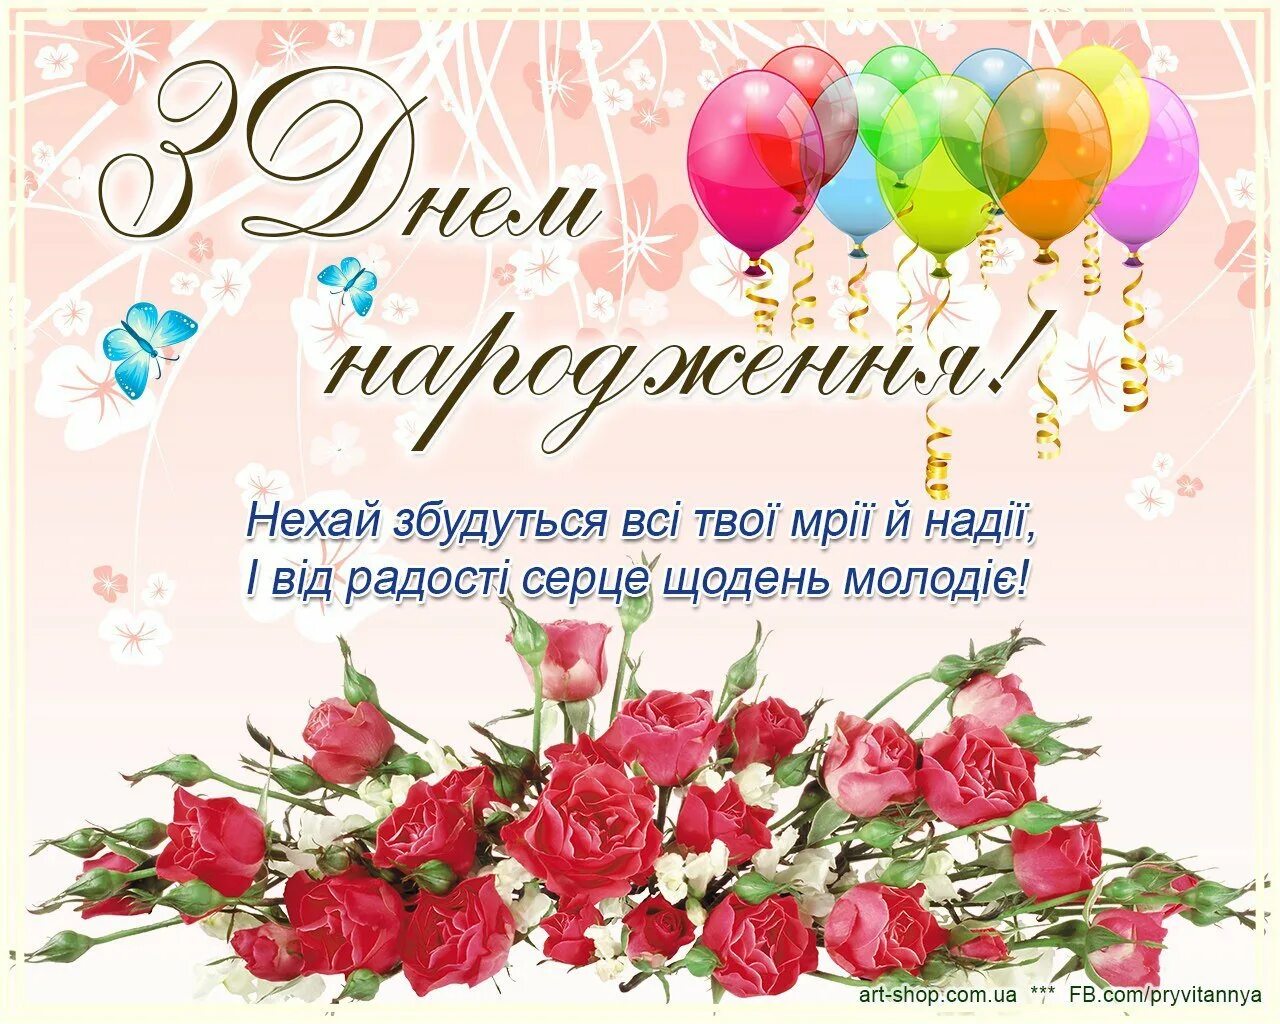 Поздравления на украинском языке. З днем народження. Поздравление с днем рождения на украинском. Поздравления с днём рождения женщине на украинском языке. Поздравленя с днём рождения на украинском языке.